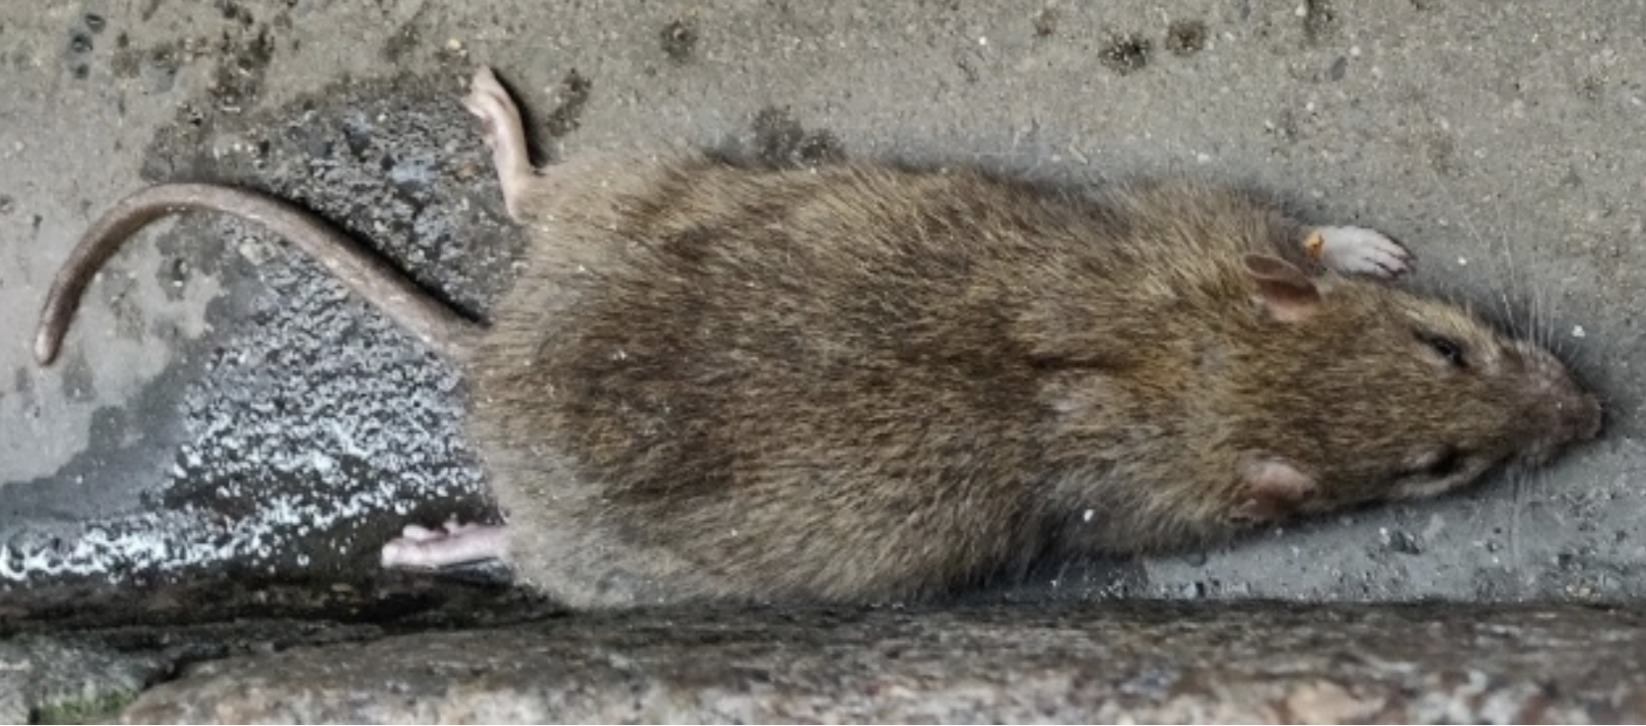 Rat d'égout, rat gris, surmulot : caractéristiques et solutions